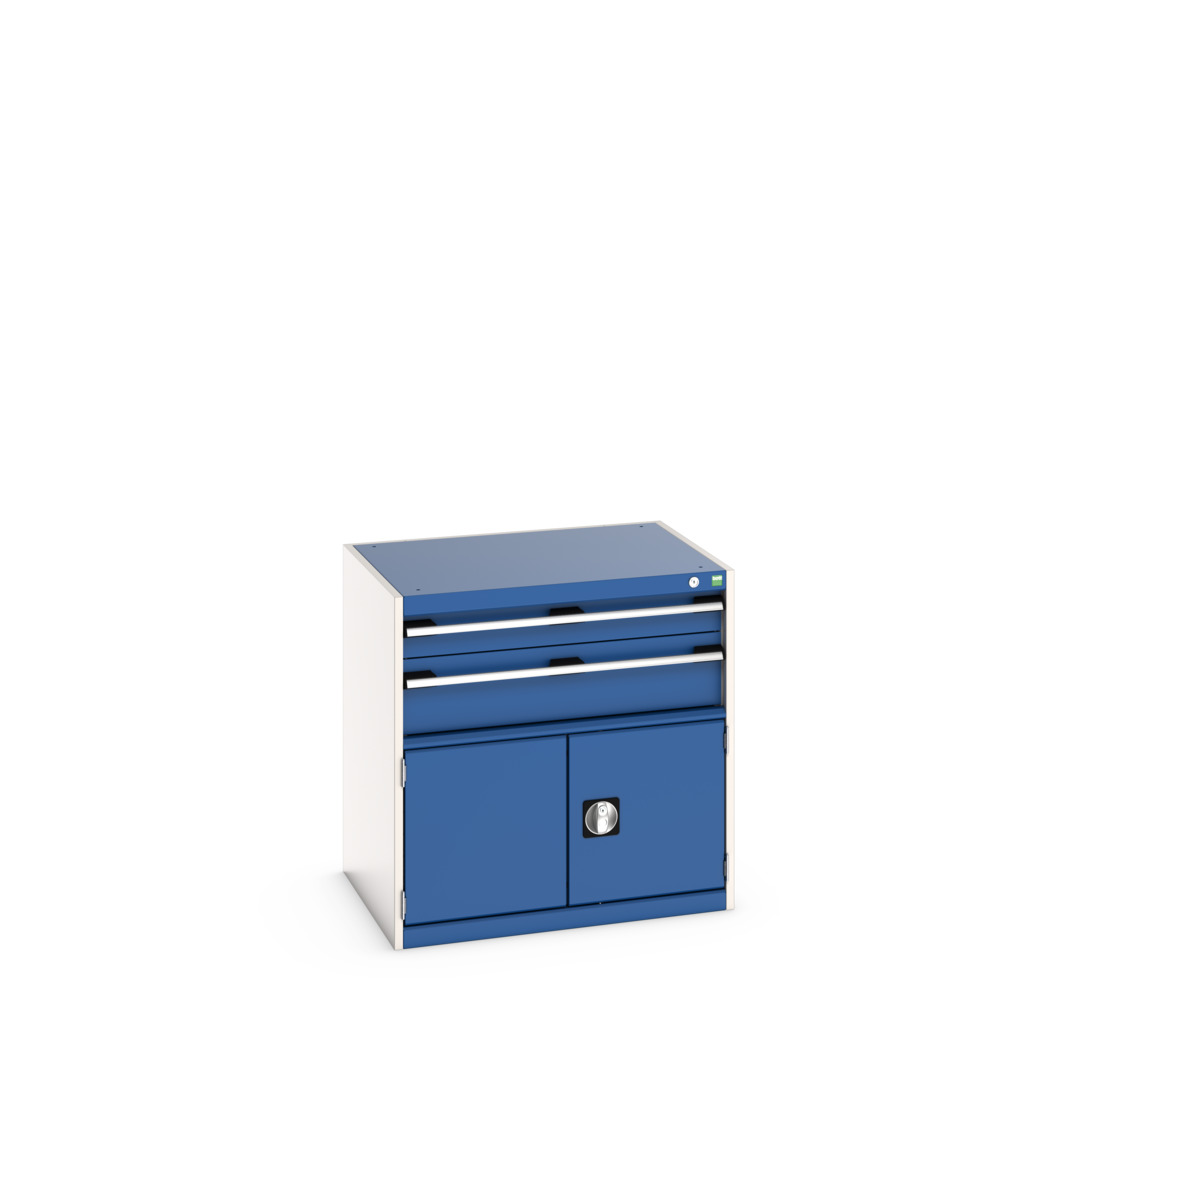 40020021.11V - cubio drawer-door cabinet